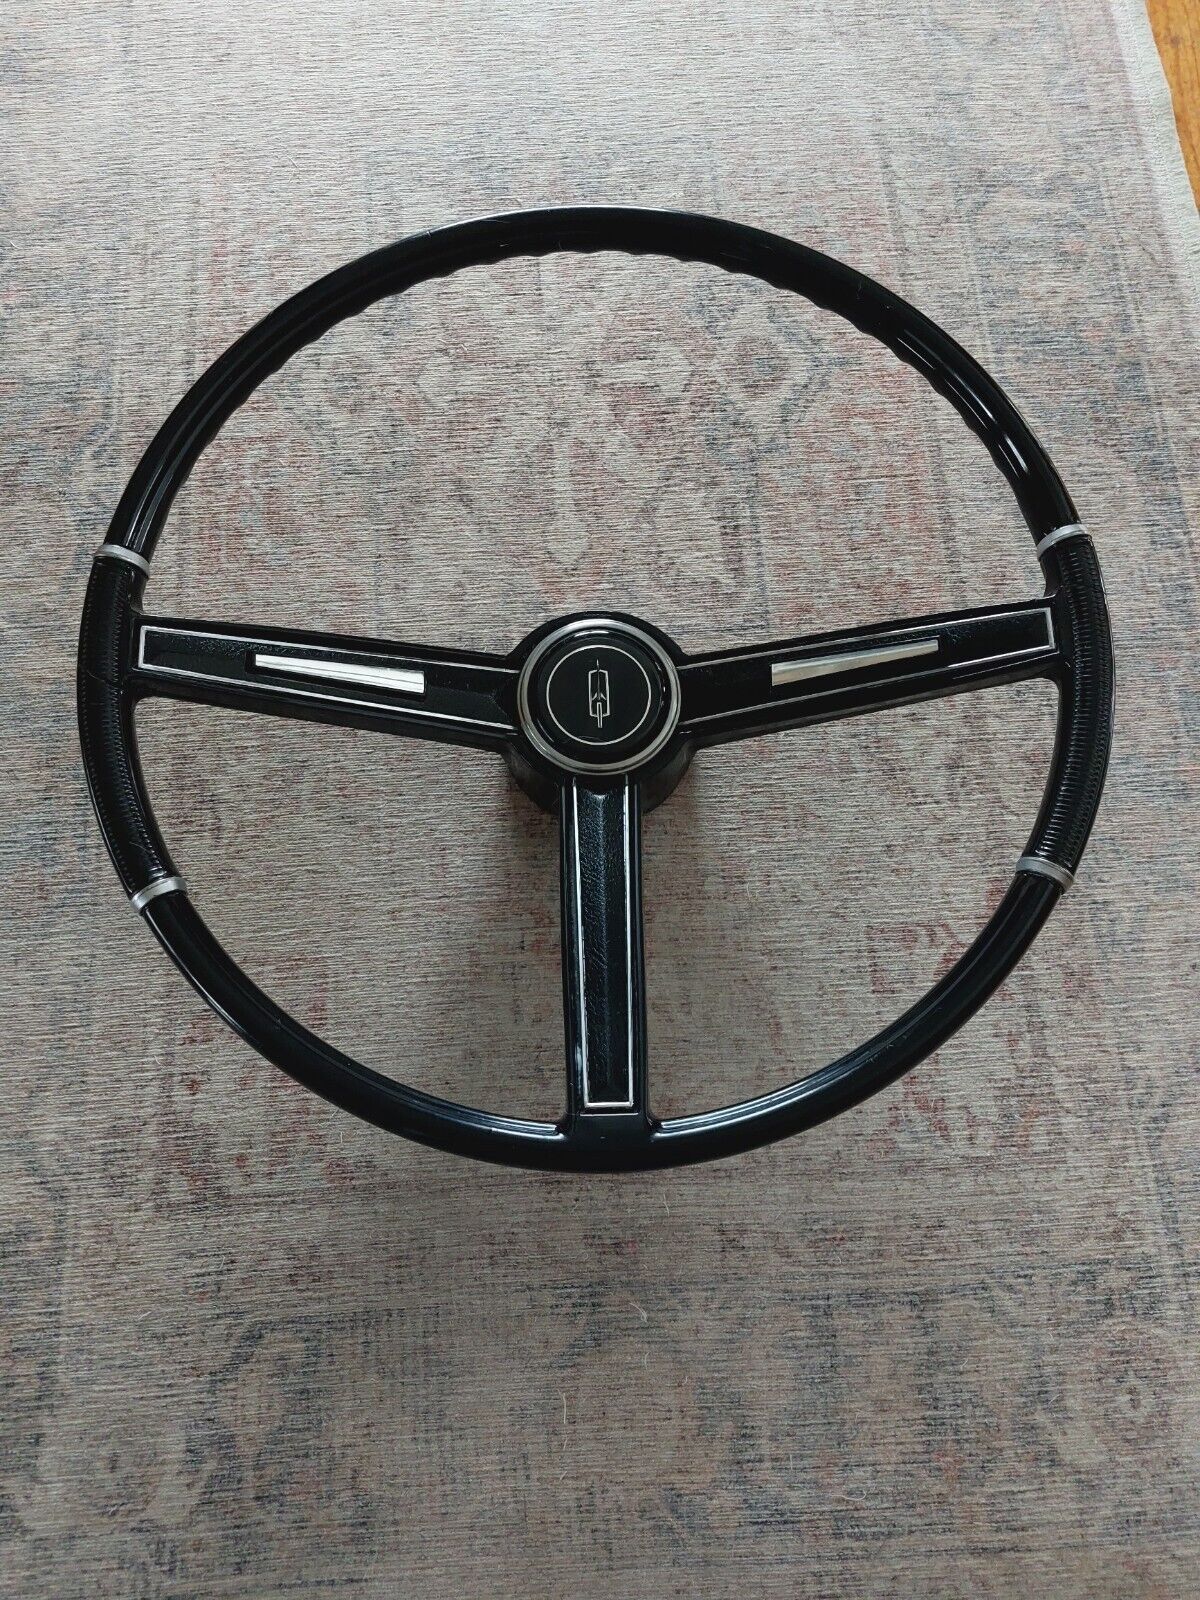 1967 Cutlass 442 Black Deluxe N30 Steering Wheel Oldsmobile Nice Original  GM